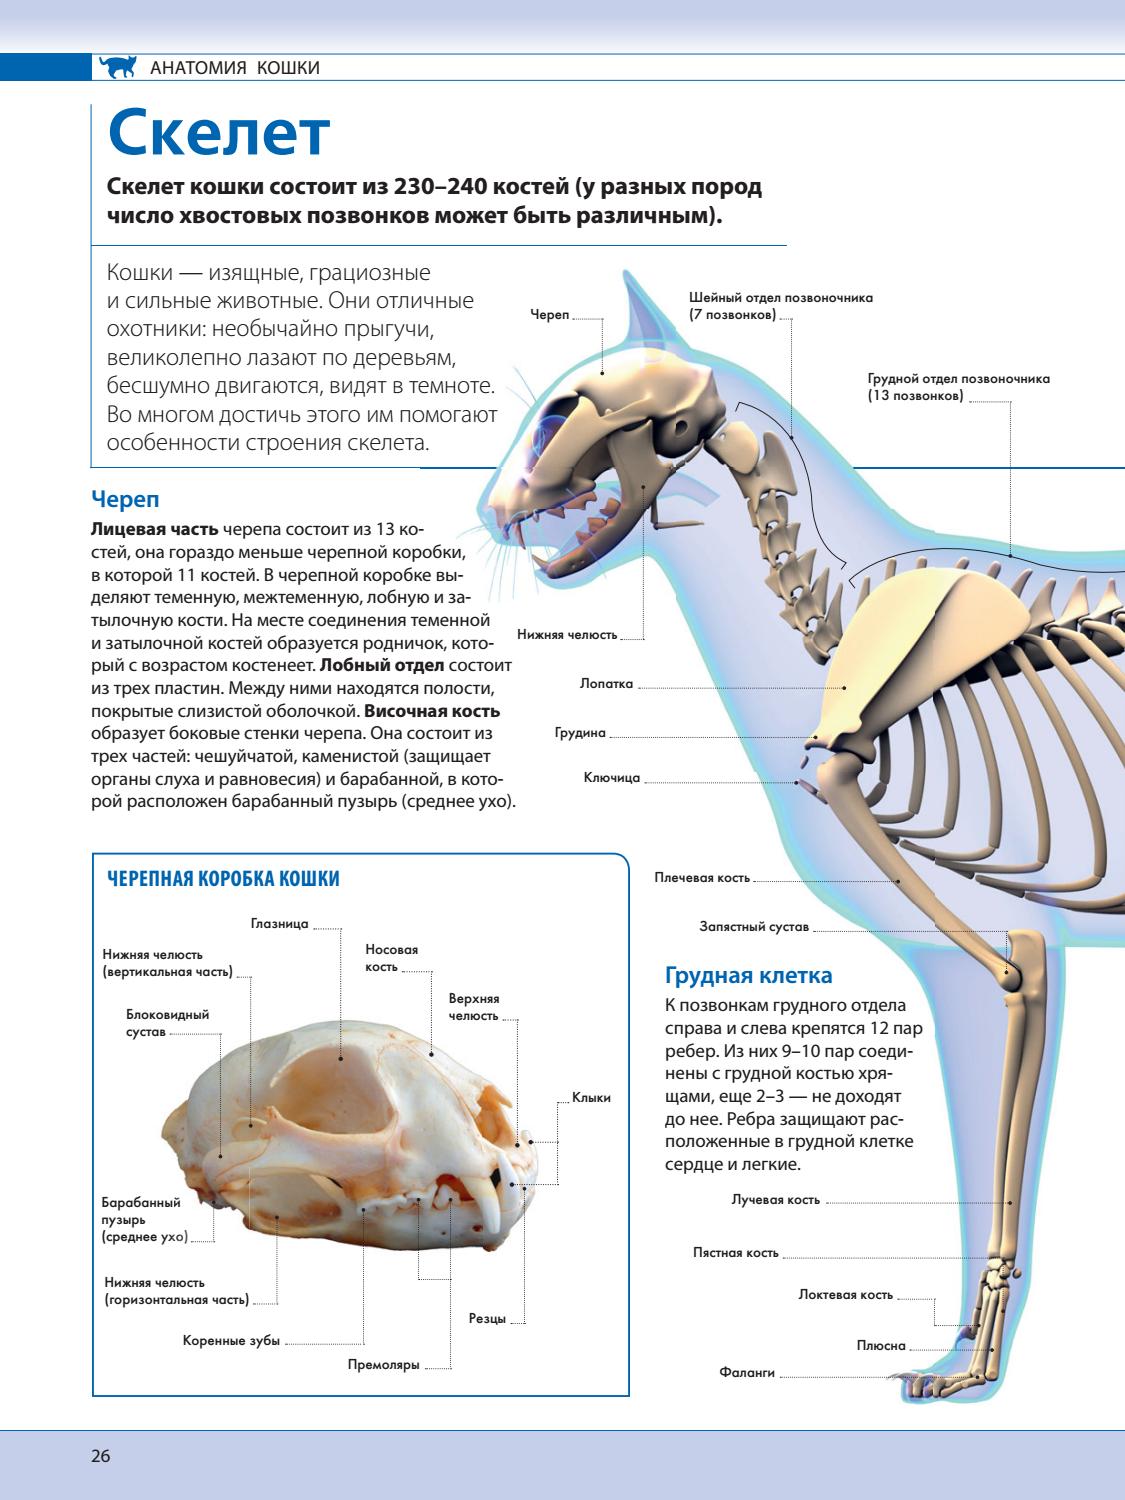 Скелет кошки: анатомия, череп, строение